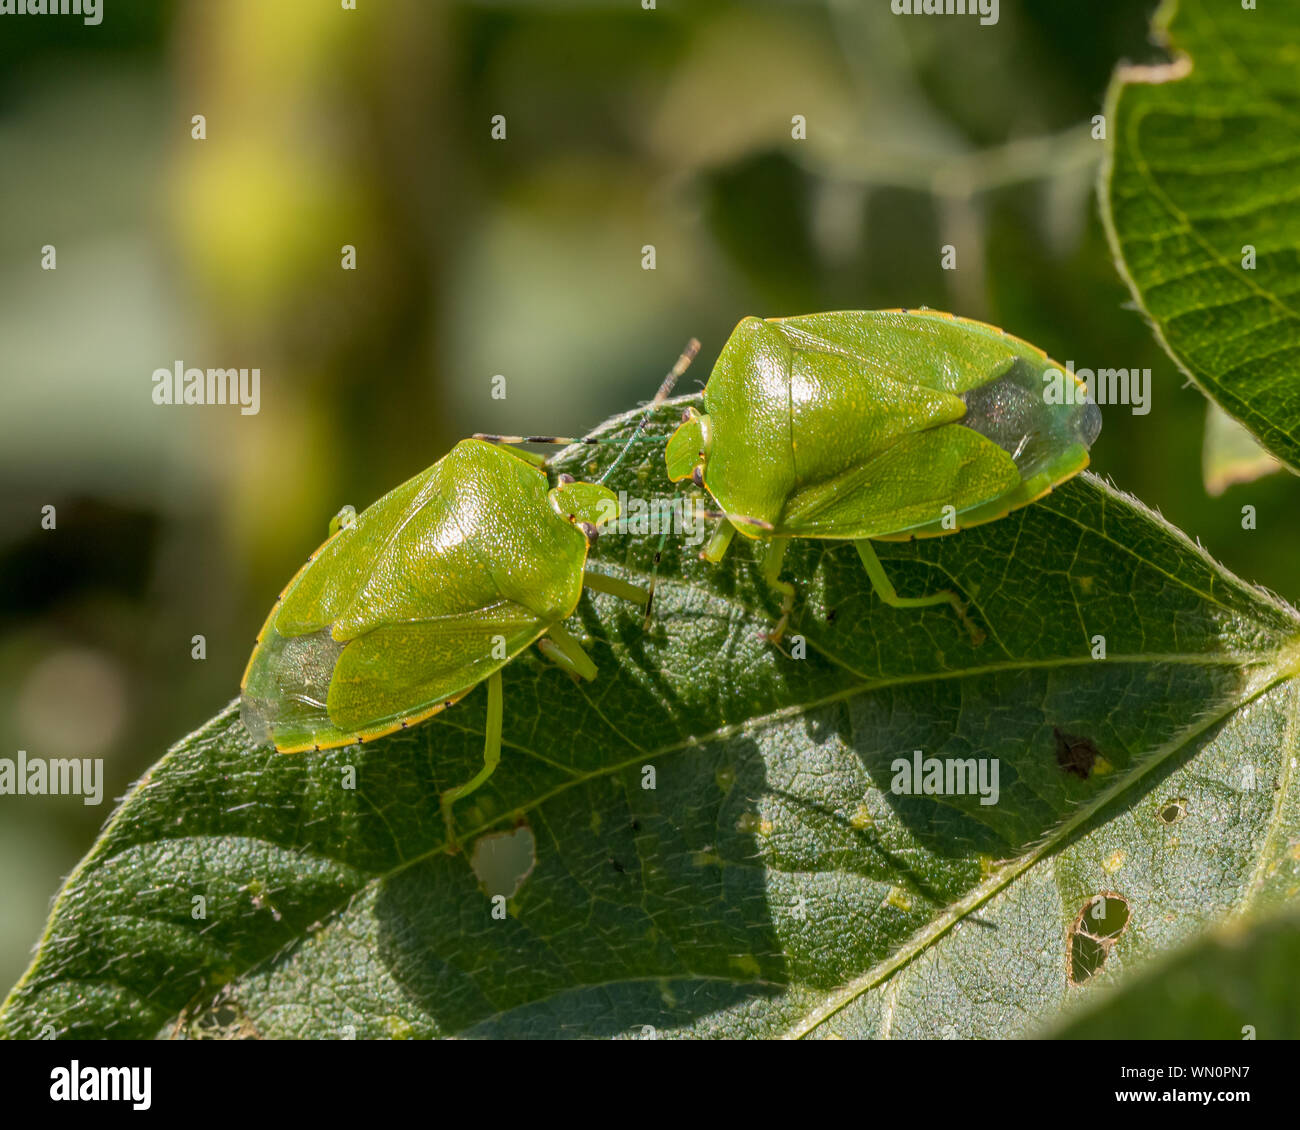 Grüne stinken Bug oder shield Bug auf Blatt von Soja Pflanze in Bauernhof Feld Stockfoto